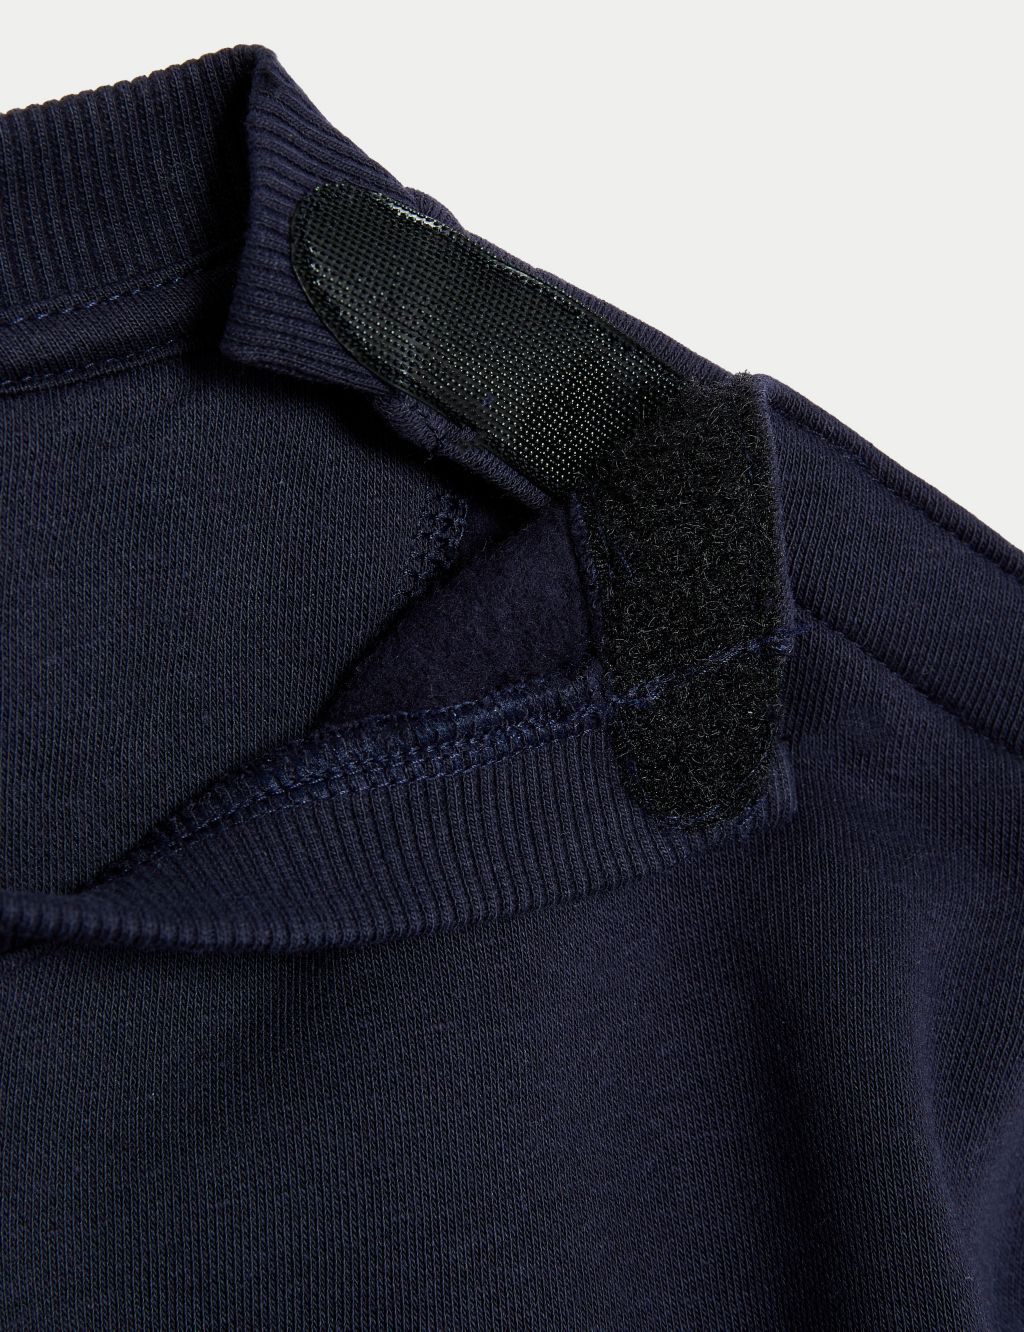 Adaptive Cotton Rich Sweatshirt (2-16 Yrs) image 2